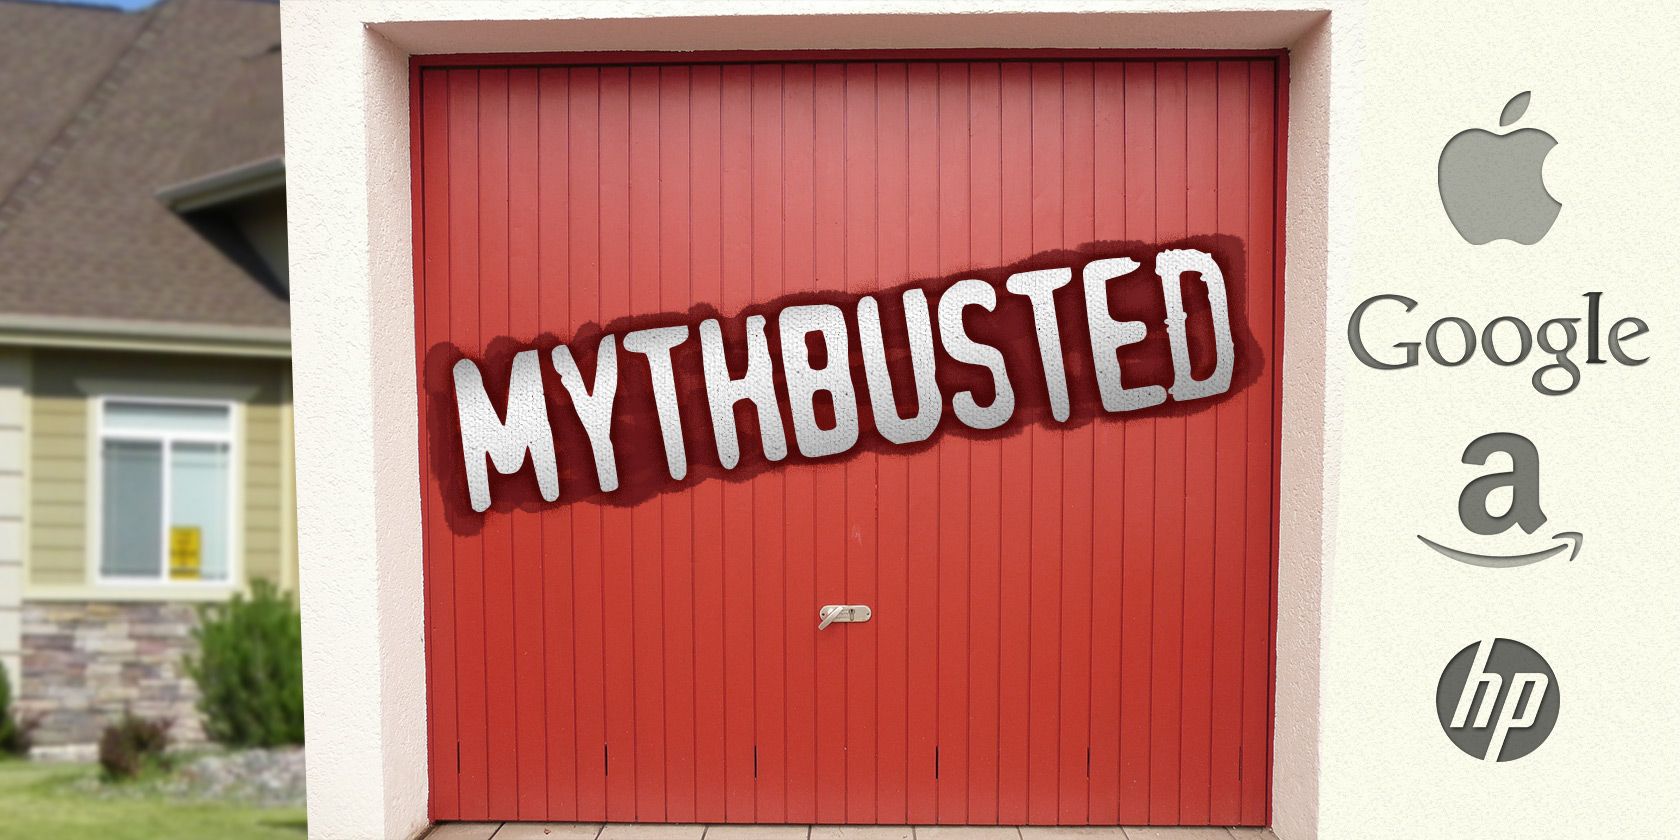 garage-myths